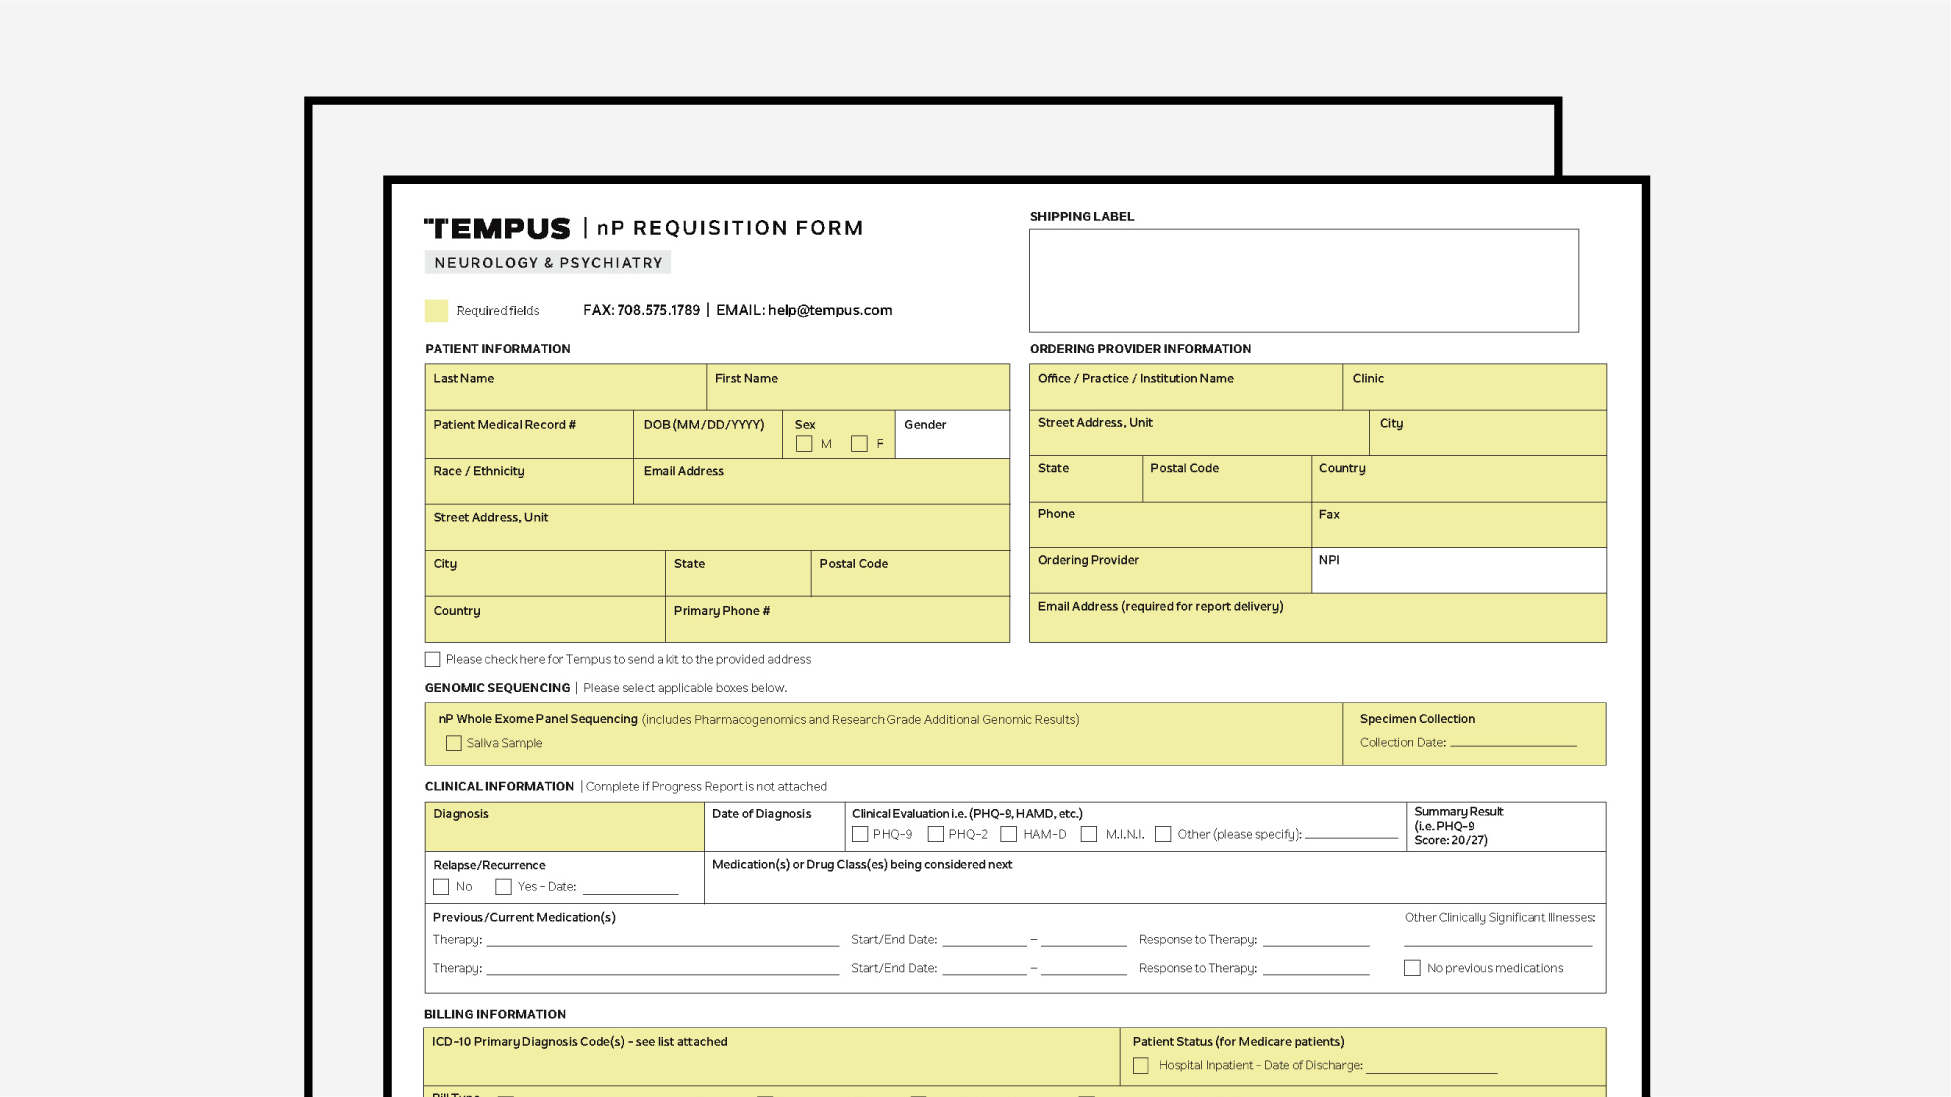 Tempus nP PGx Requisition Form